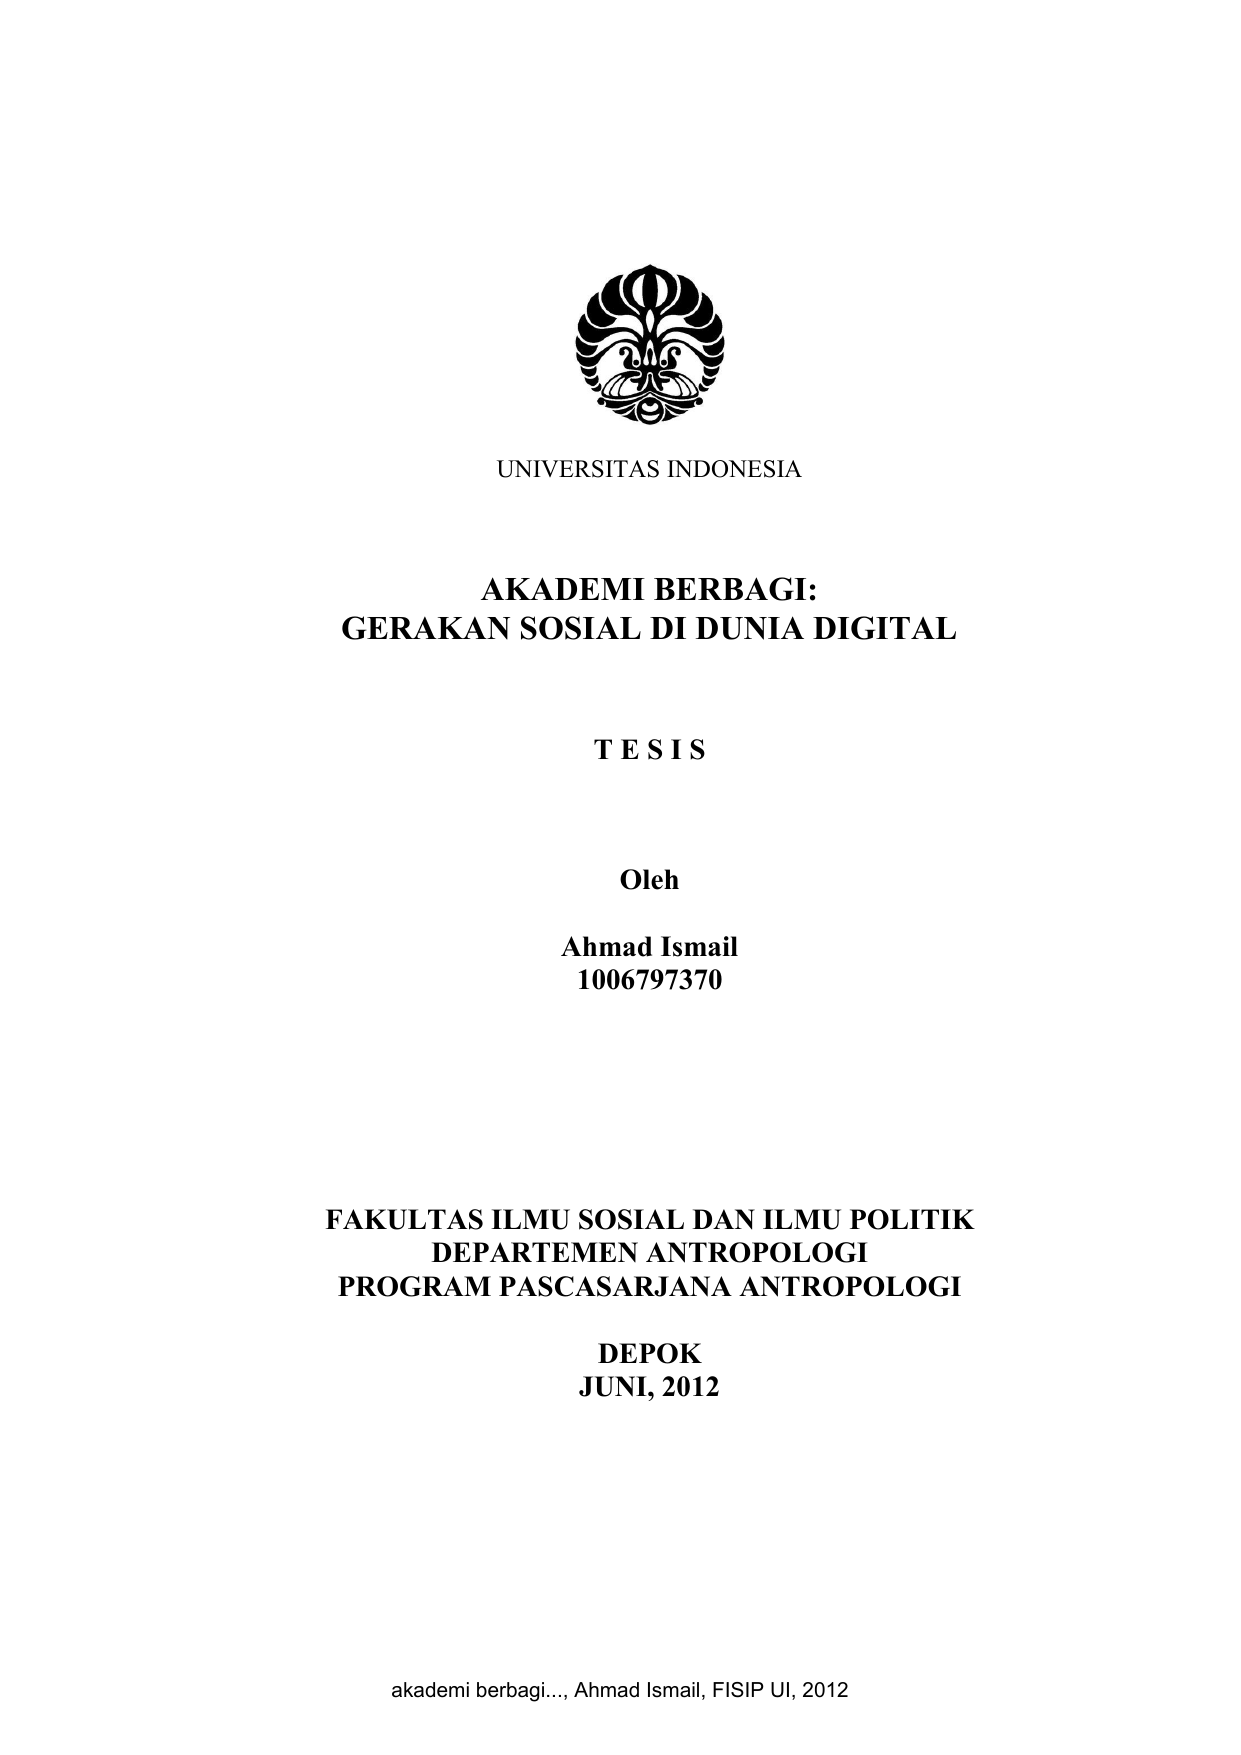 UNIVERSITAS INDONESIA AKADEMI BERBAGI GERAKAN SOSIAL DI DUNIA DIGITAL TESIS Oleh Ahmad Ismail FAKULTAS ILMU SOSIAL DAN ILMU POLITIK DEPARTEMEN